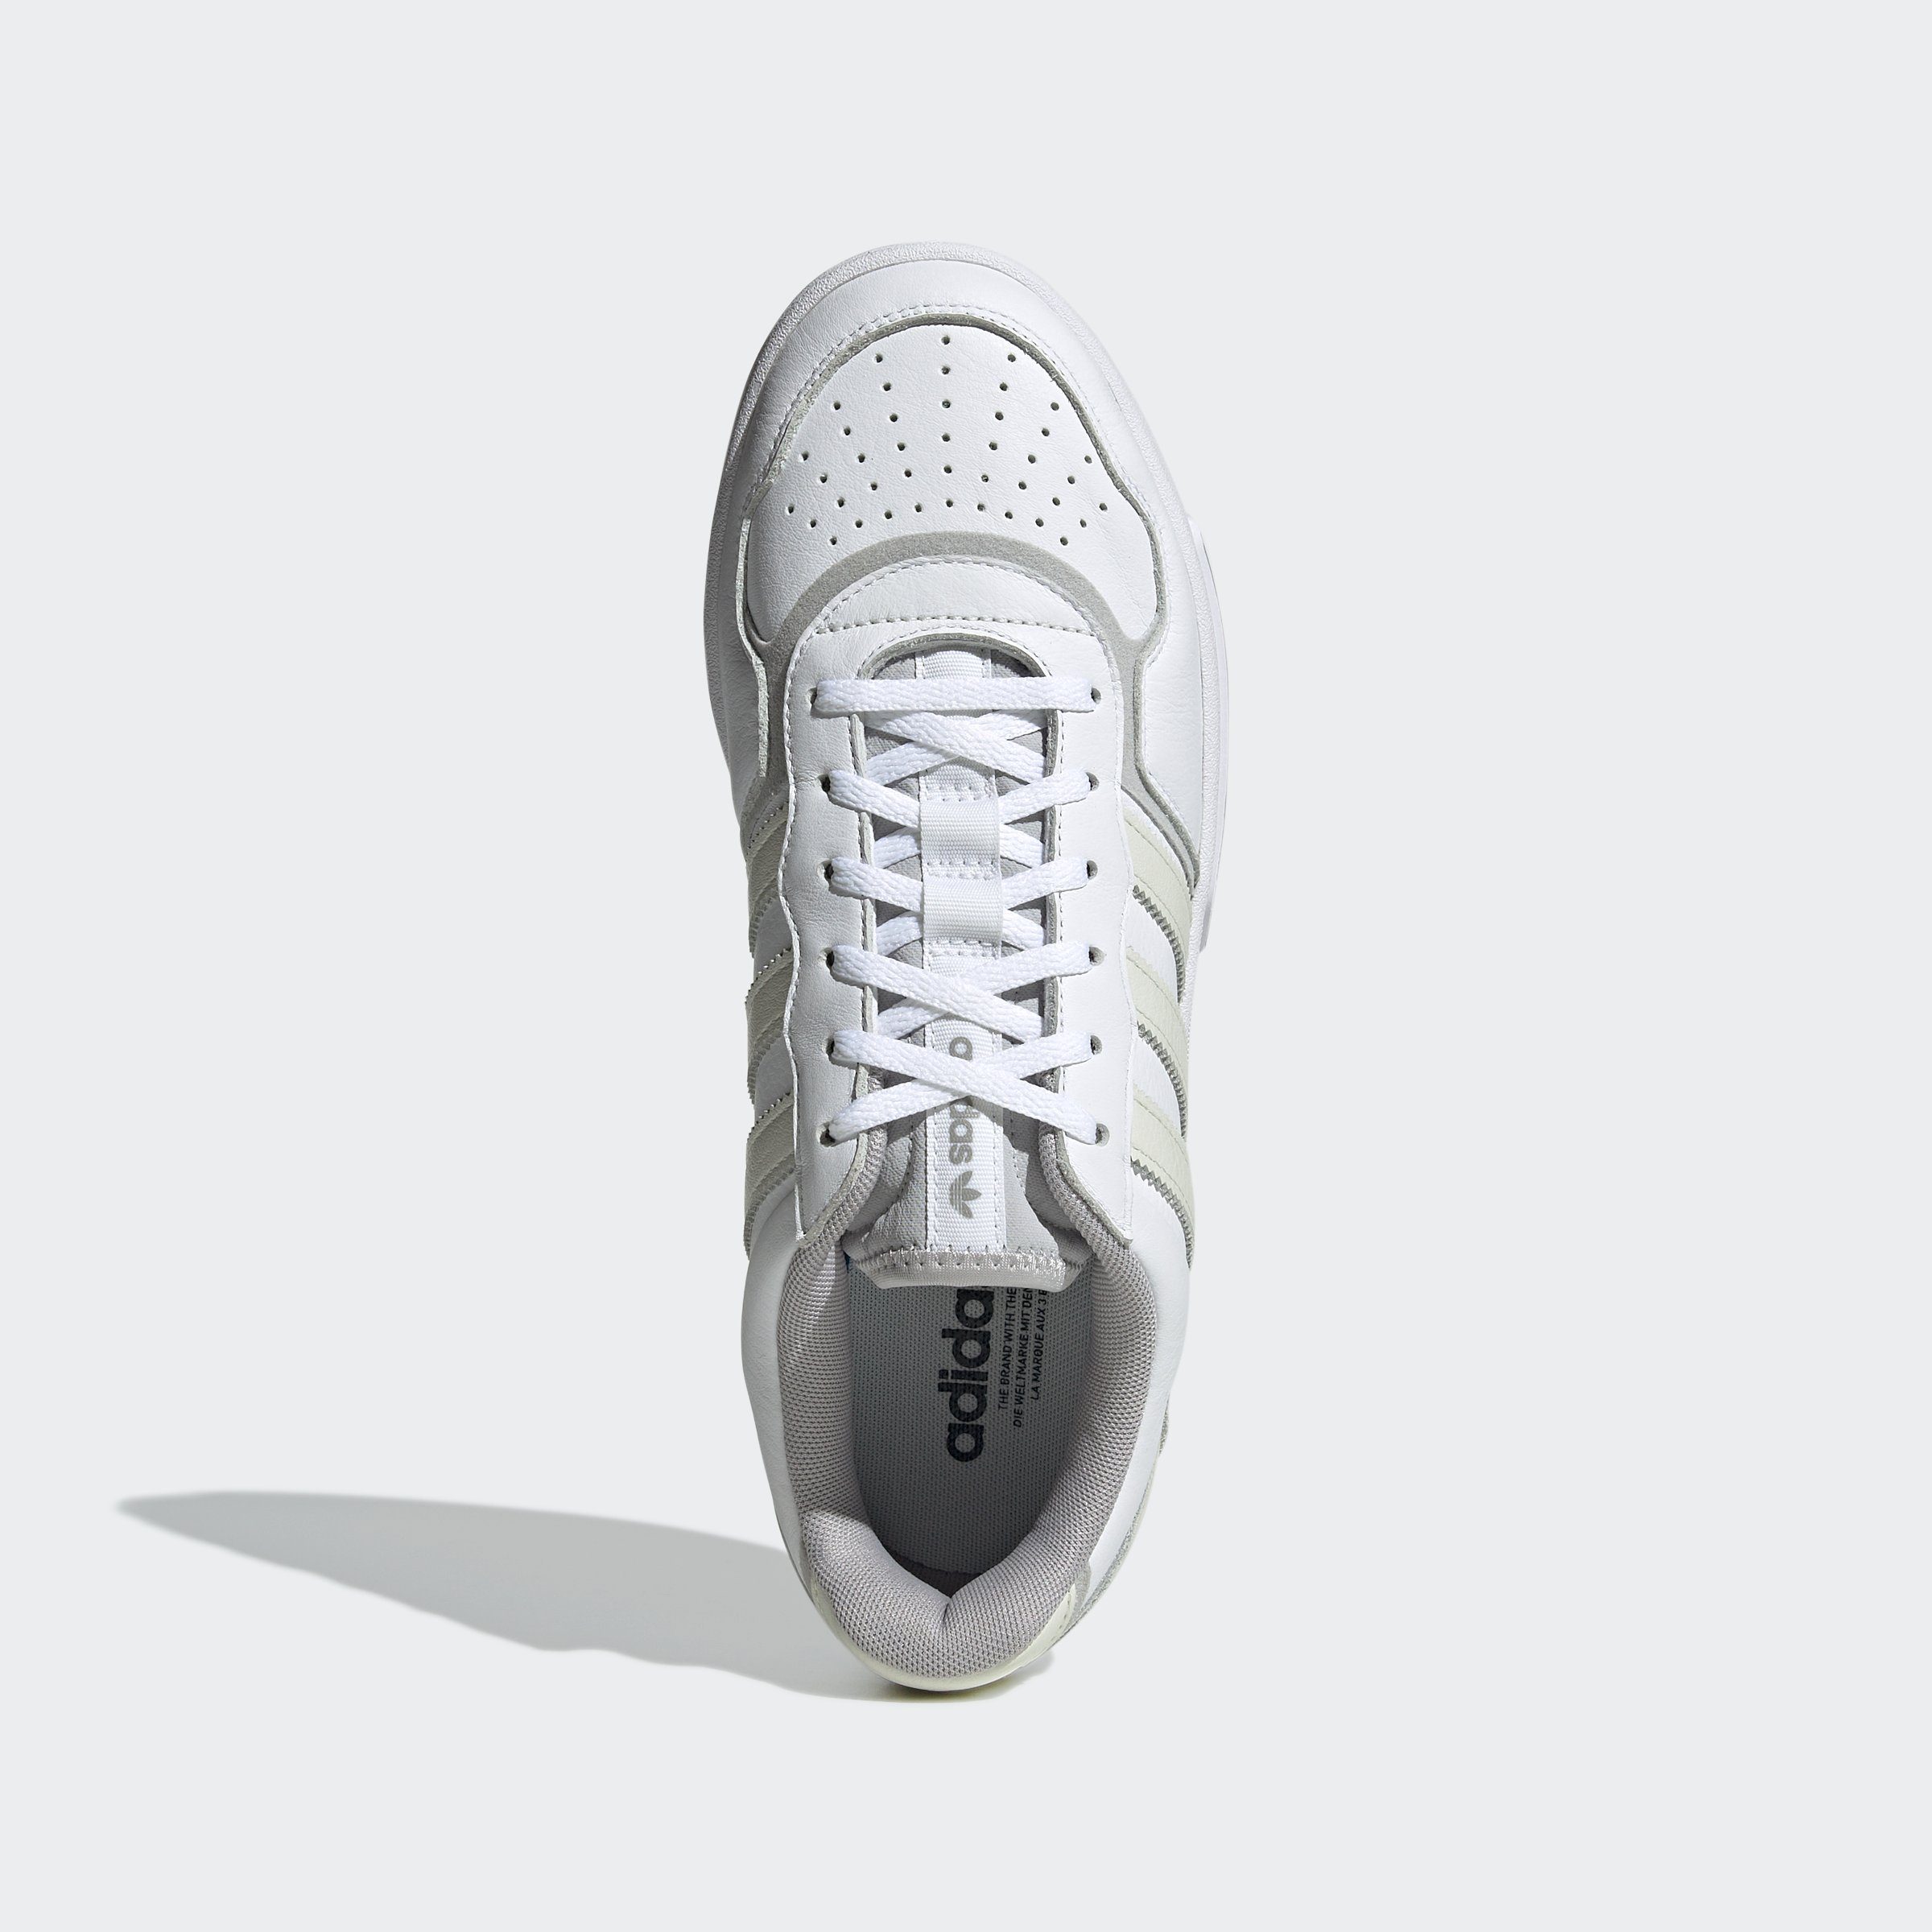 COURTIC Originals Sneaker adidas weiß-creme